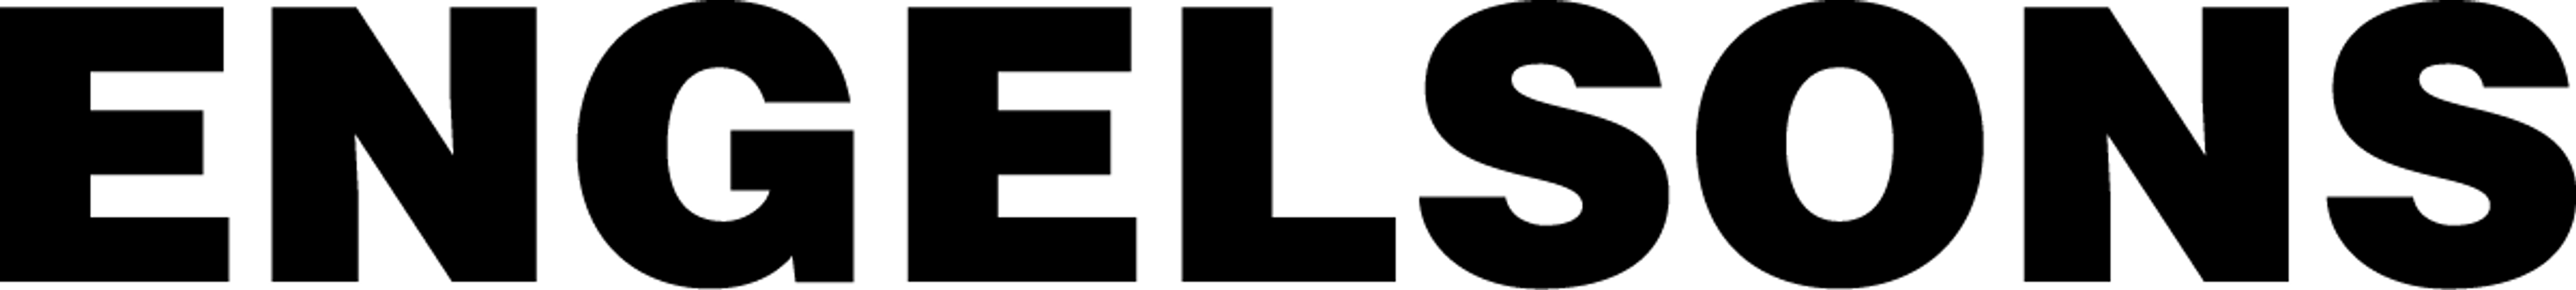 ENGELSONS logo